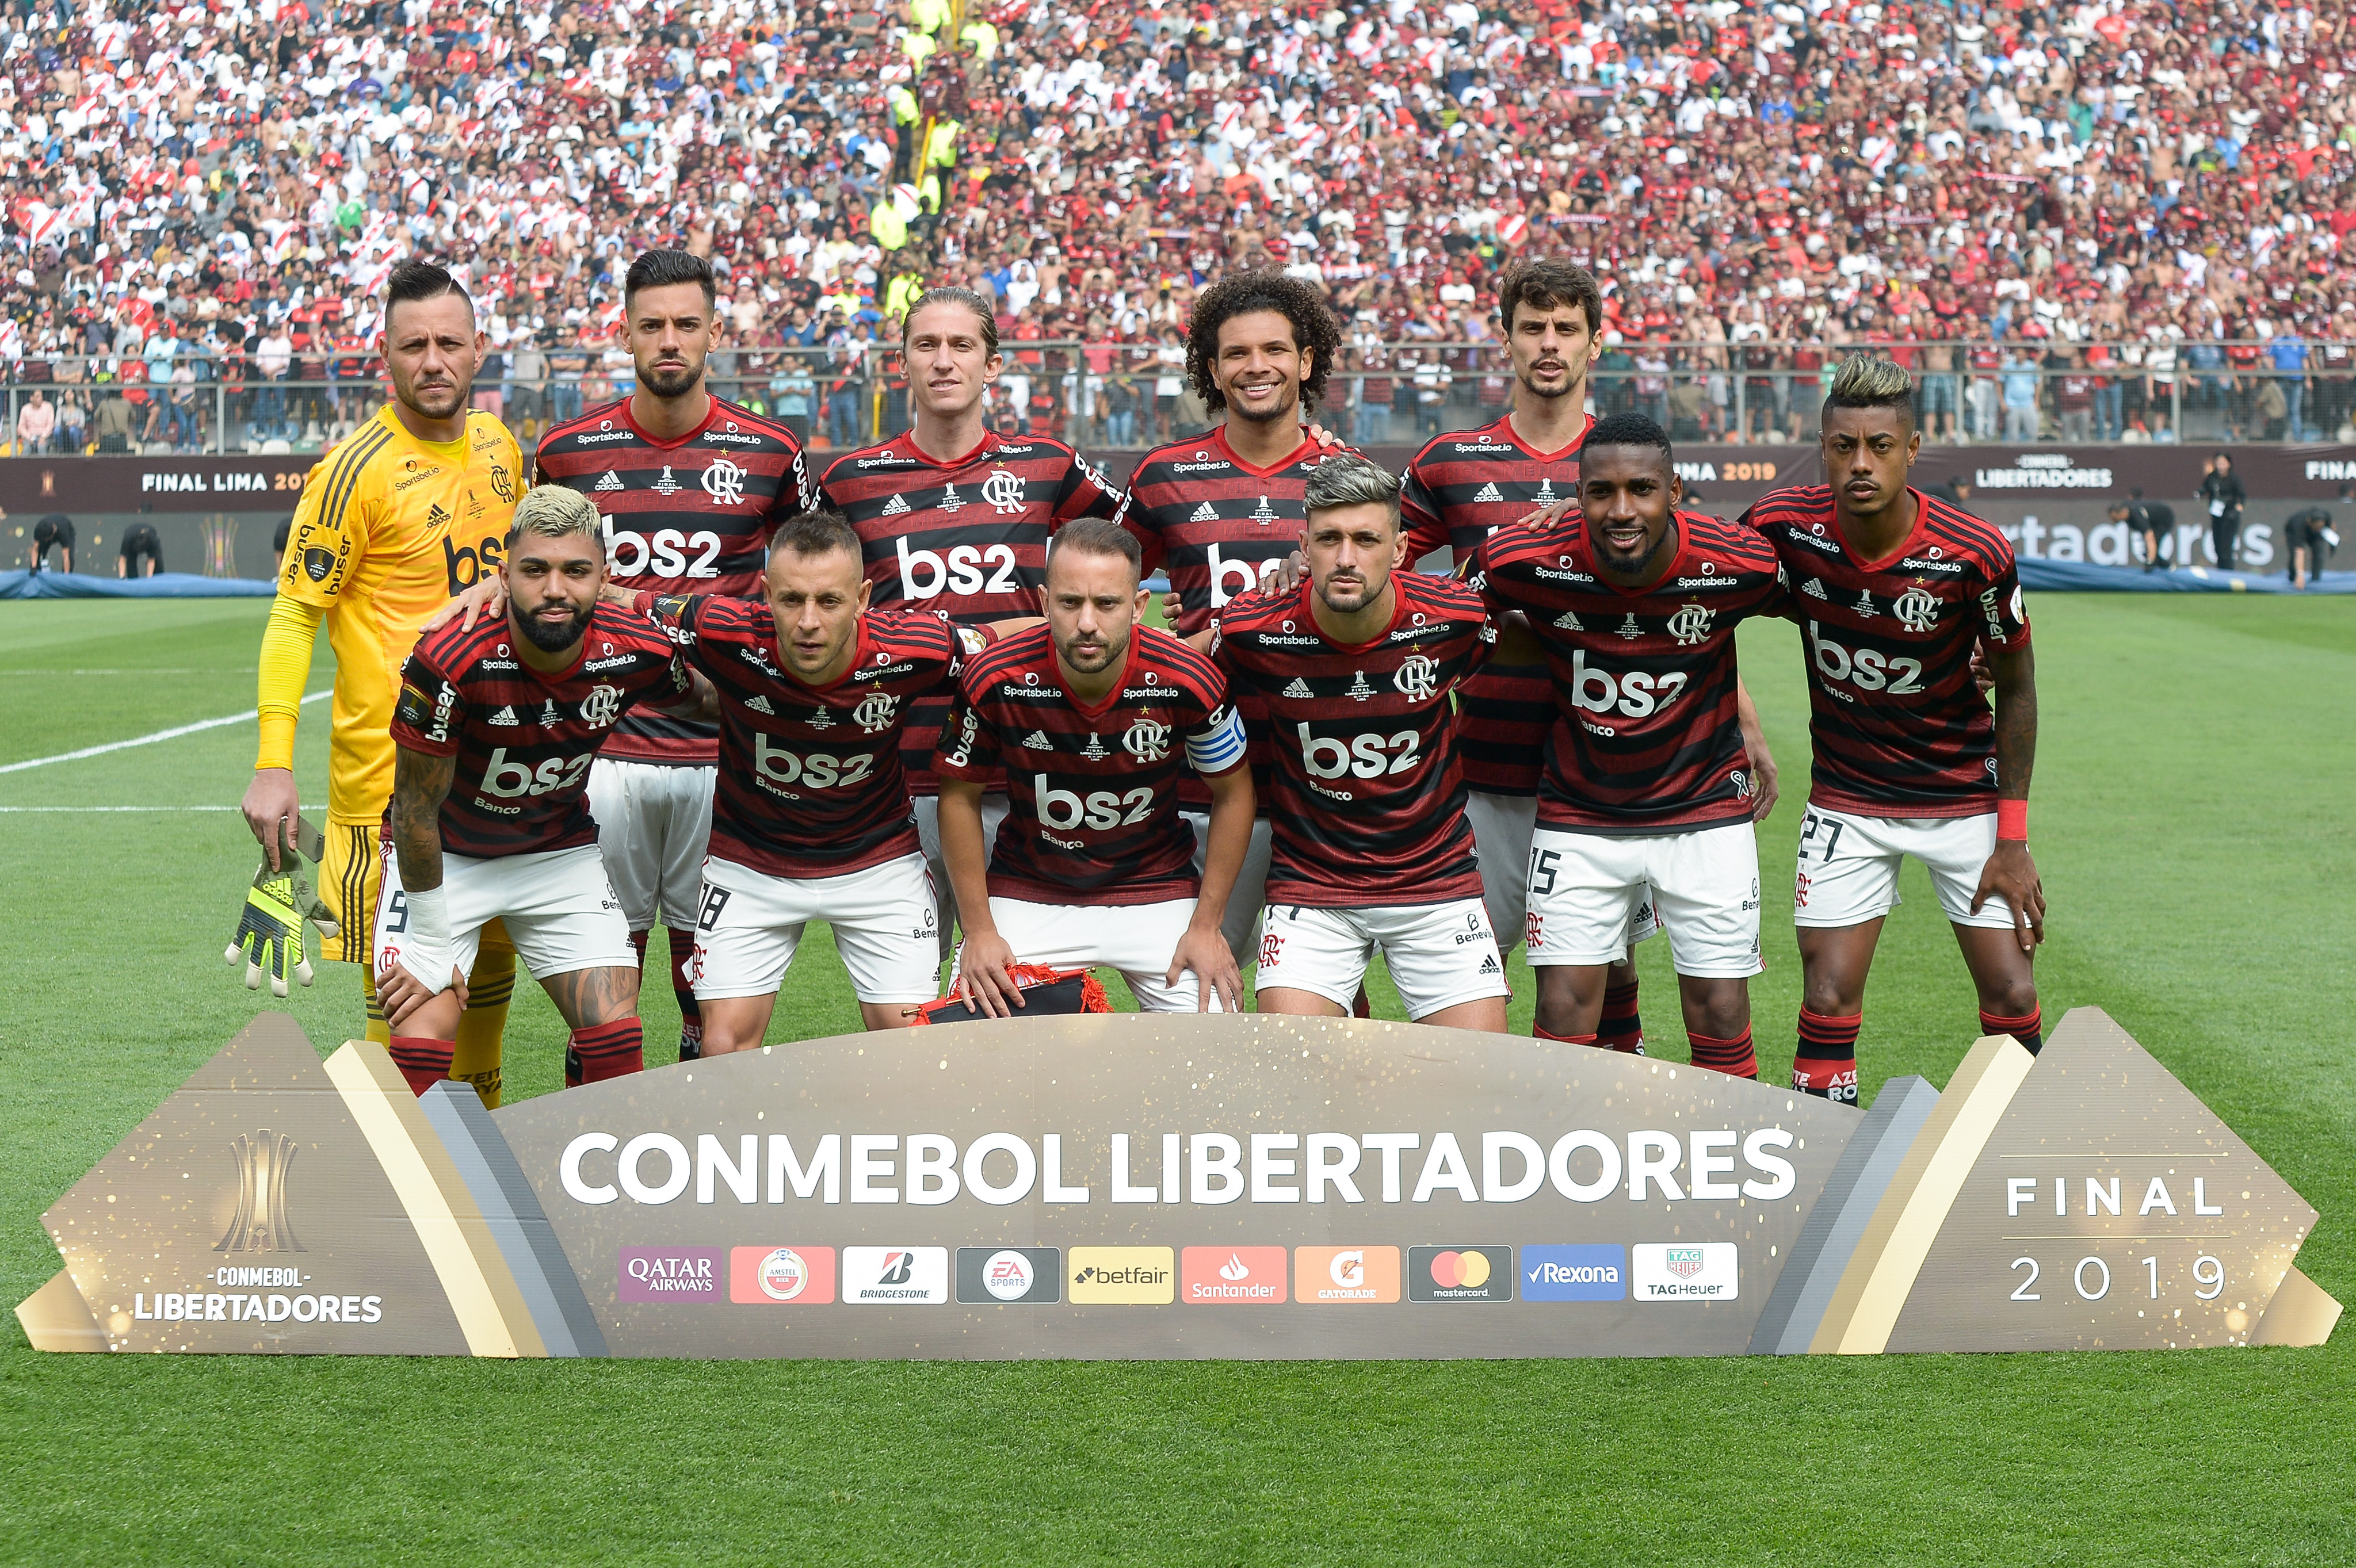 Os brasileiros venceram o River Plate de virada por 2 a 1, com dois gols de Gabigol anotados aos 43 e aos 46 minutos do segundo tempo.